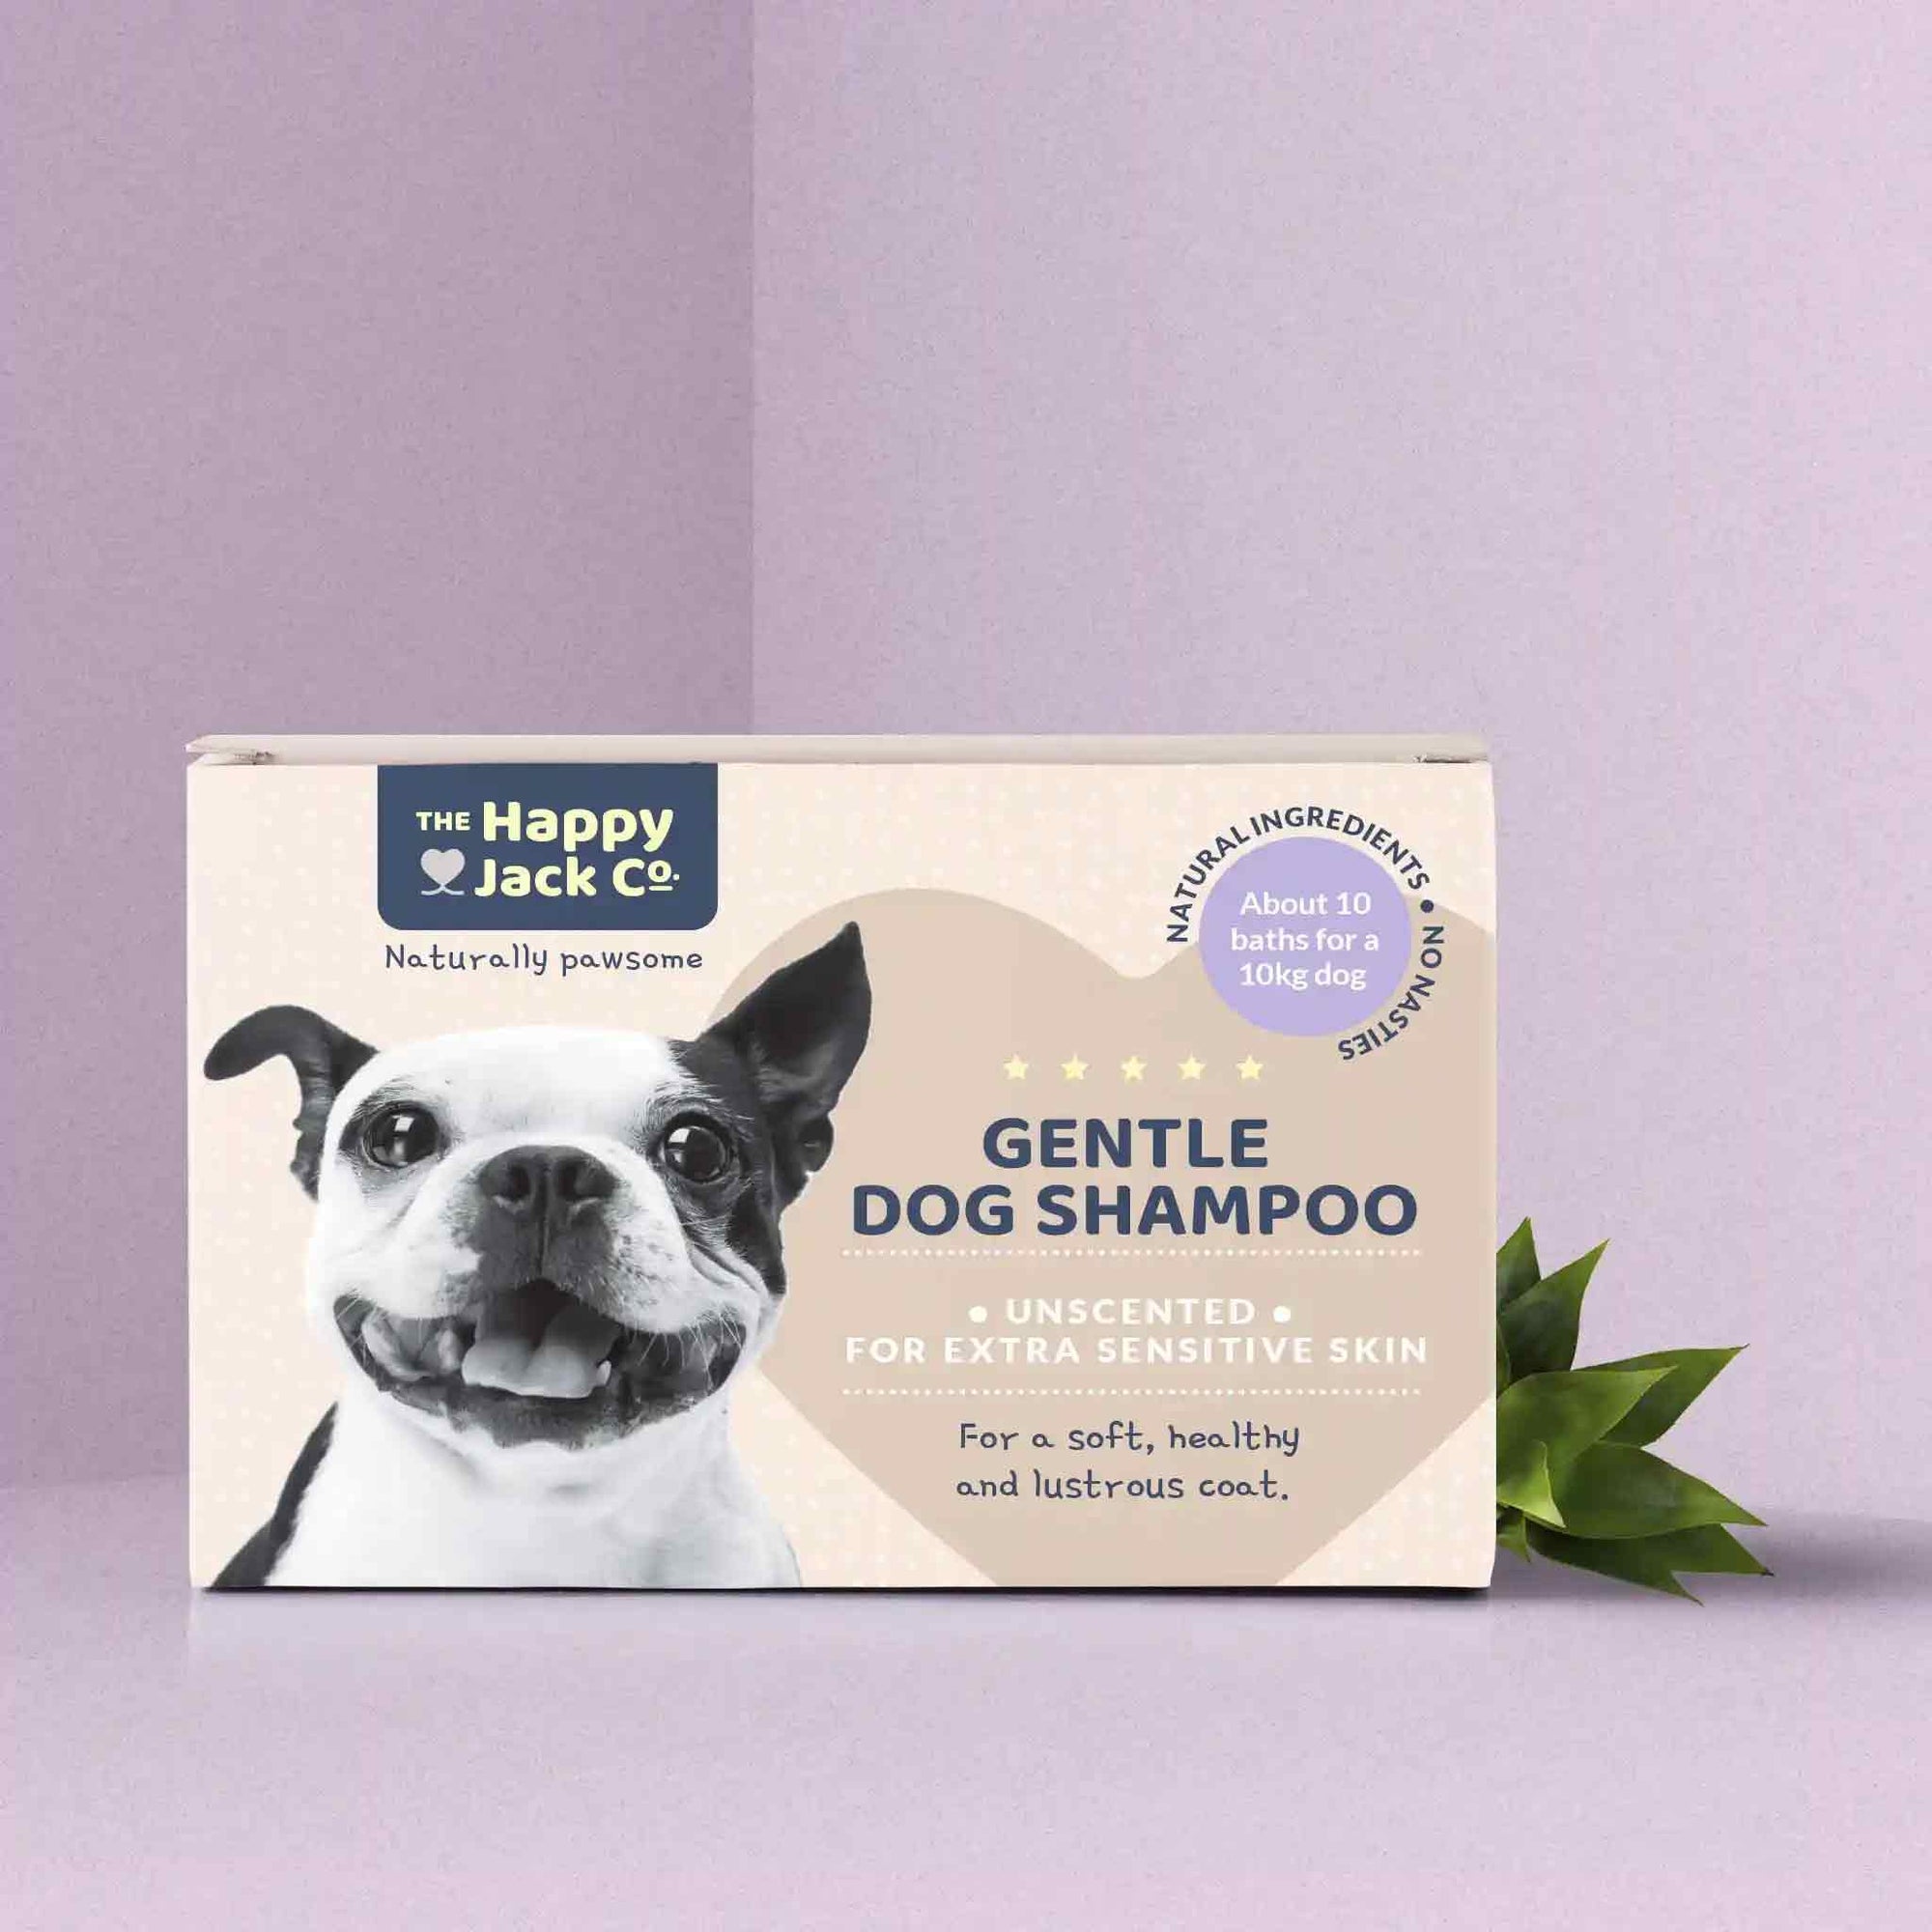 Gentle dog shamppo